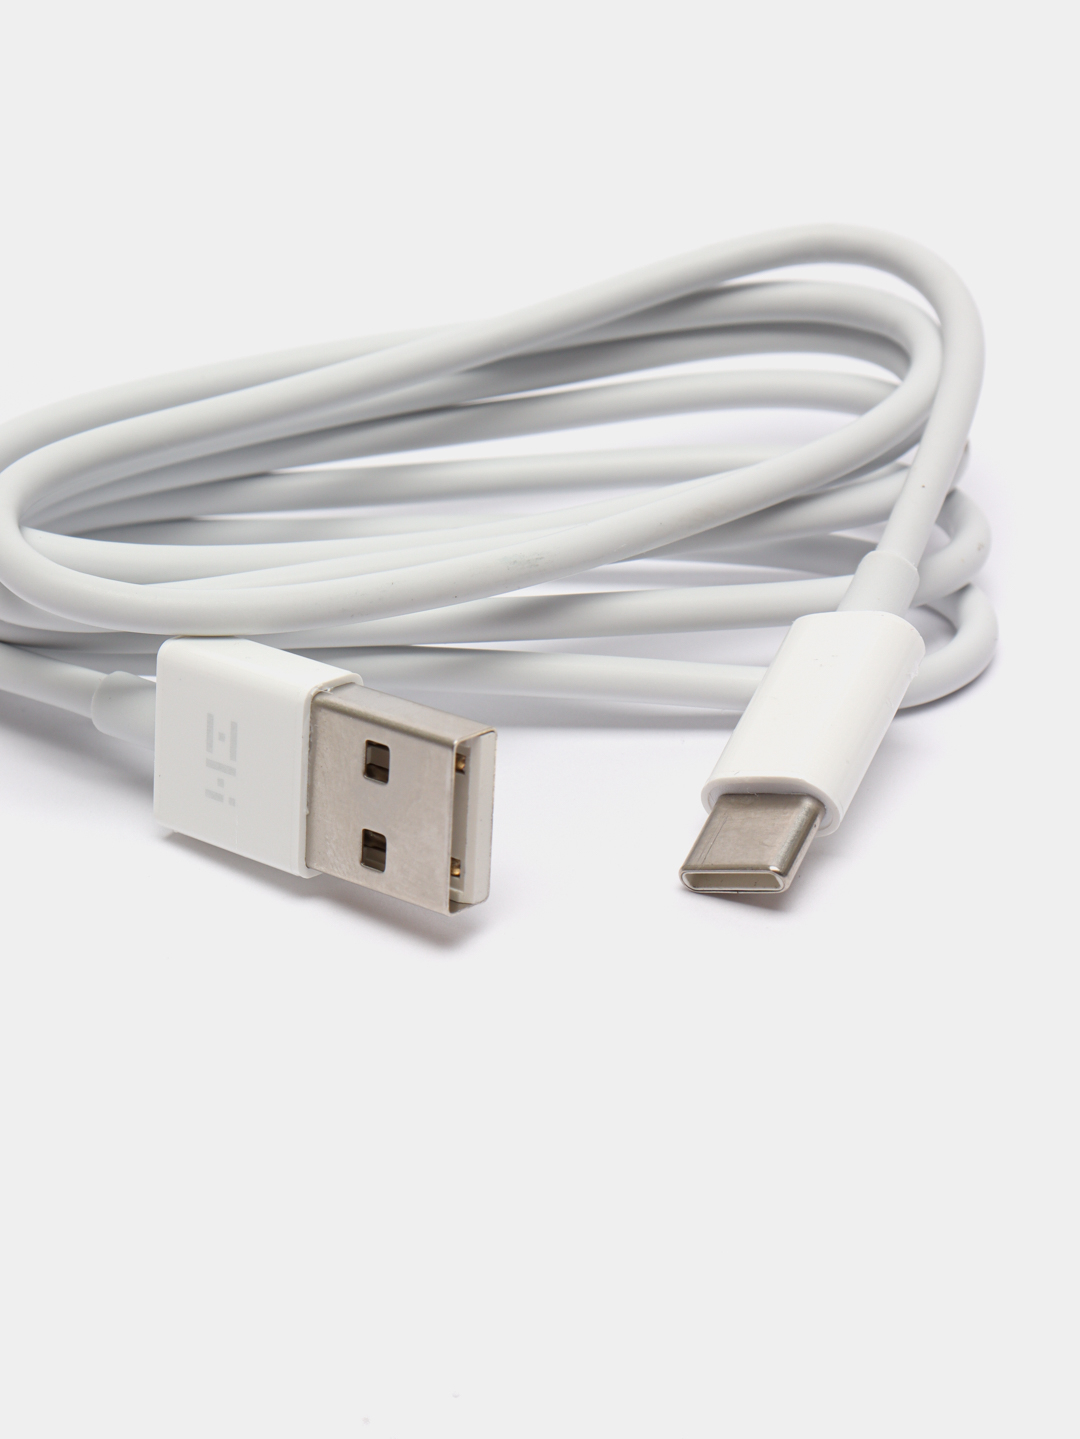 Кабель Xiaomi 2-in-1 USB Cable MICROUSB to Type-c 100см белый МТС WXD. Кабель для хиаоми стик. Роутер Ксиаоми провод. Оригинальный провод Xiaomi Type c. Кабели xiaomi купить